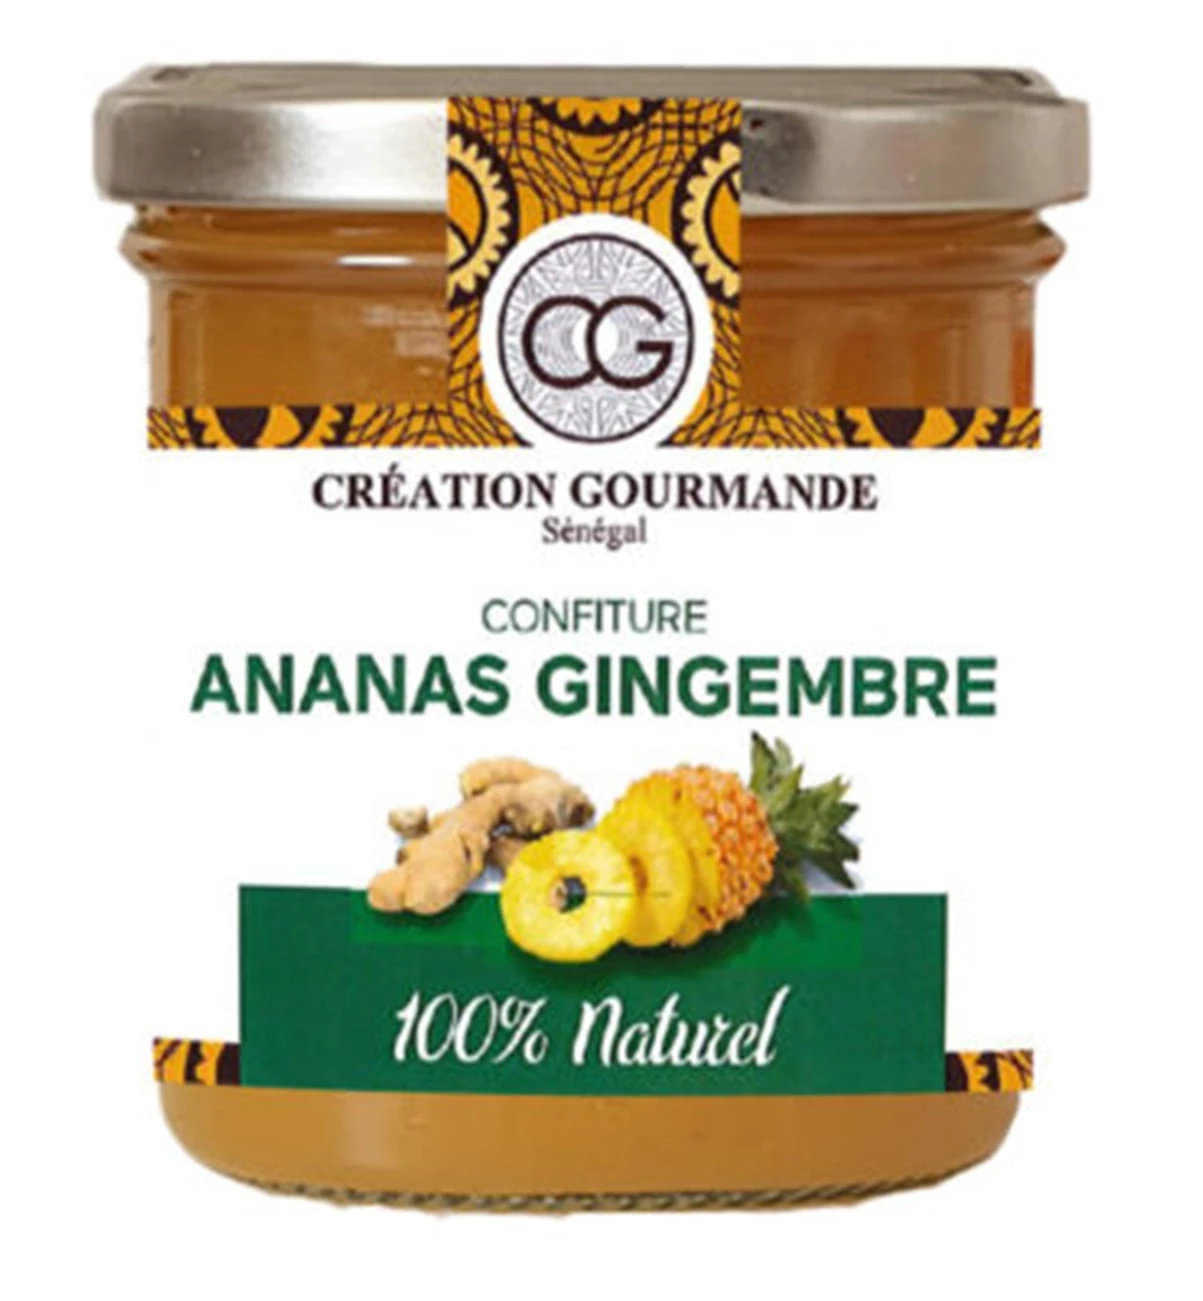 Confiture Ananas Gingembre 230g - Seneafood